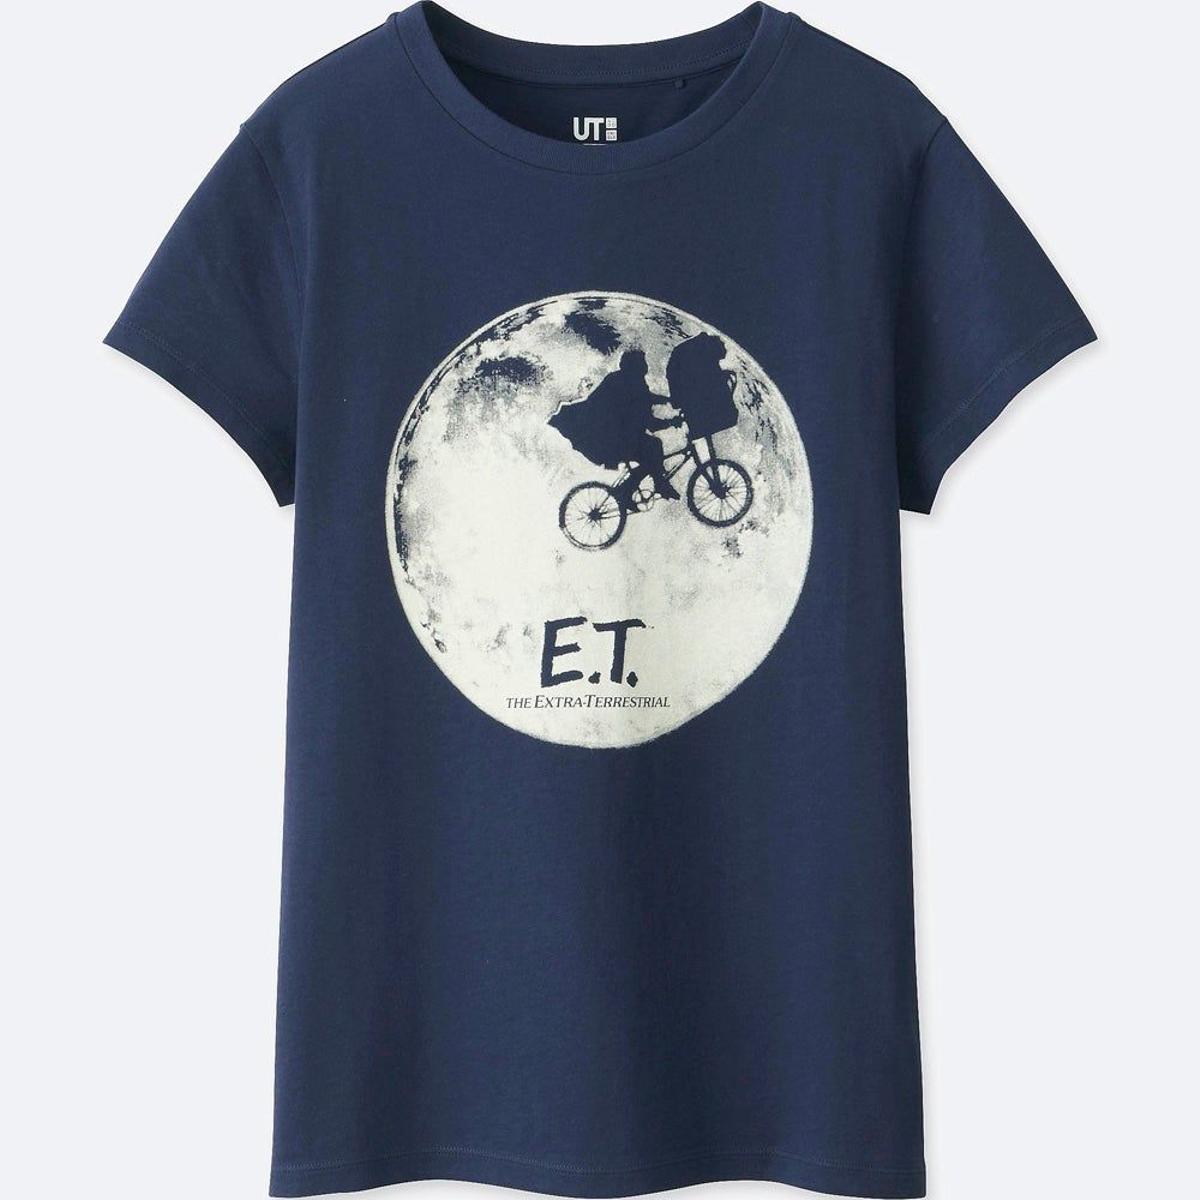 Camiseta retro de E.T. de Uniqlo